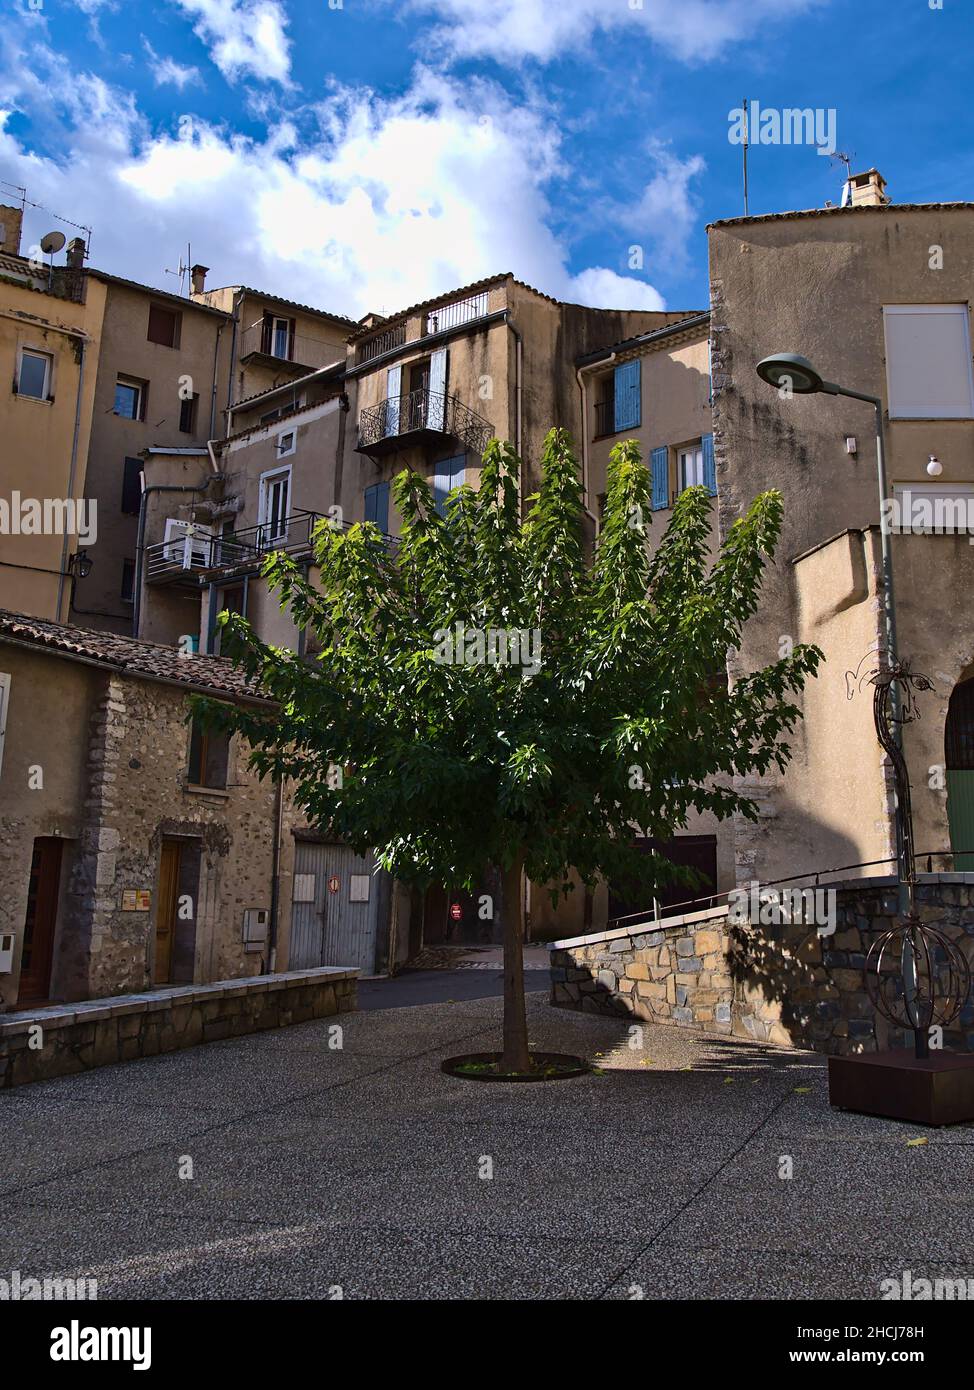 Vista sul centro storico della città Sisteron in Provenza, Francia con piazza circondata da edifici antichi e un unico albero deciduo con foglie verdi. Foto Stock